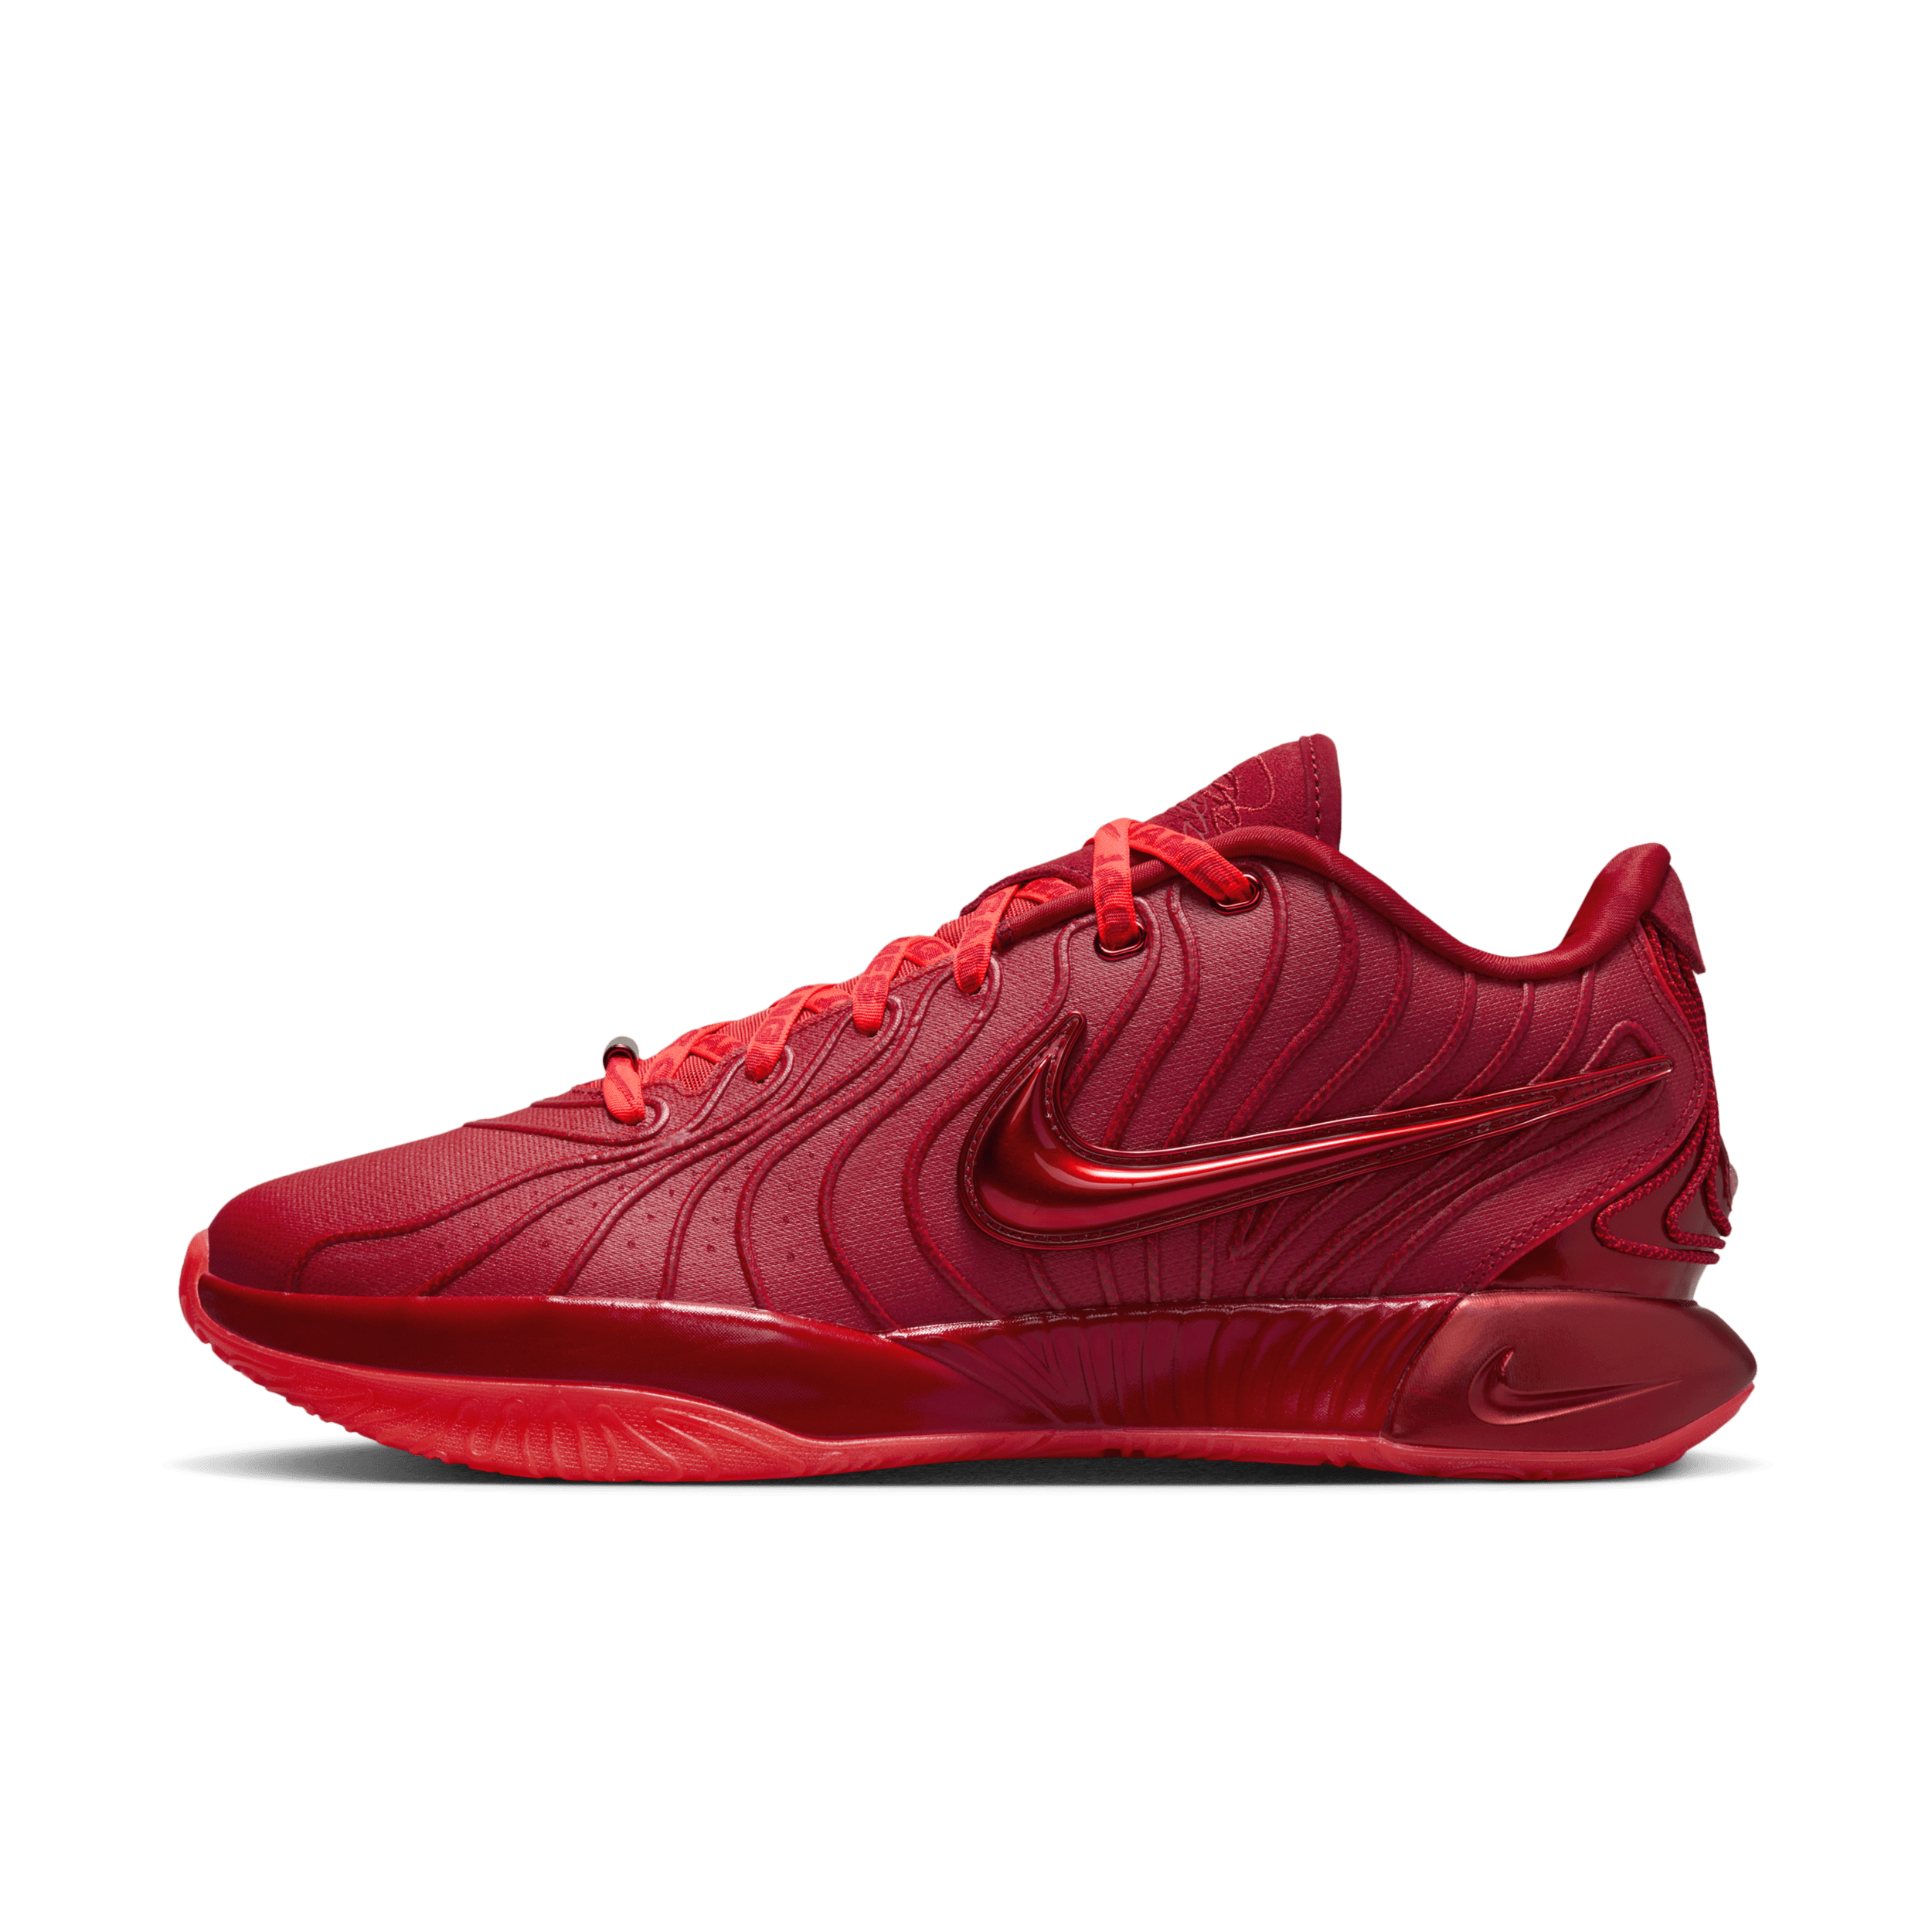 Nike LeBron XXI basketbalschoenen - Rood